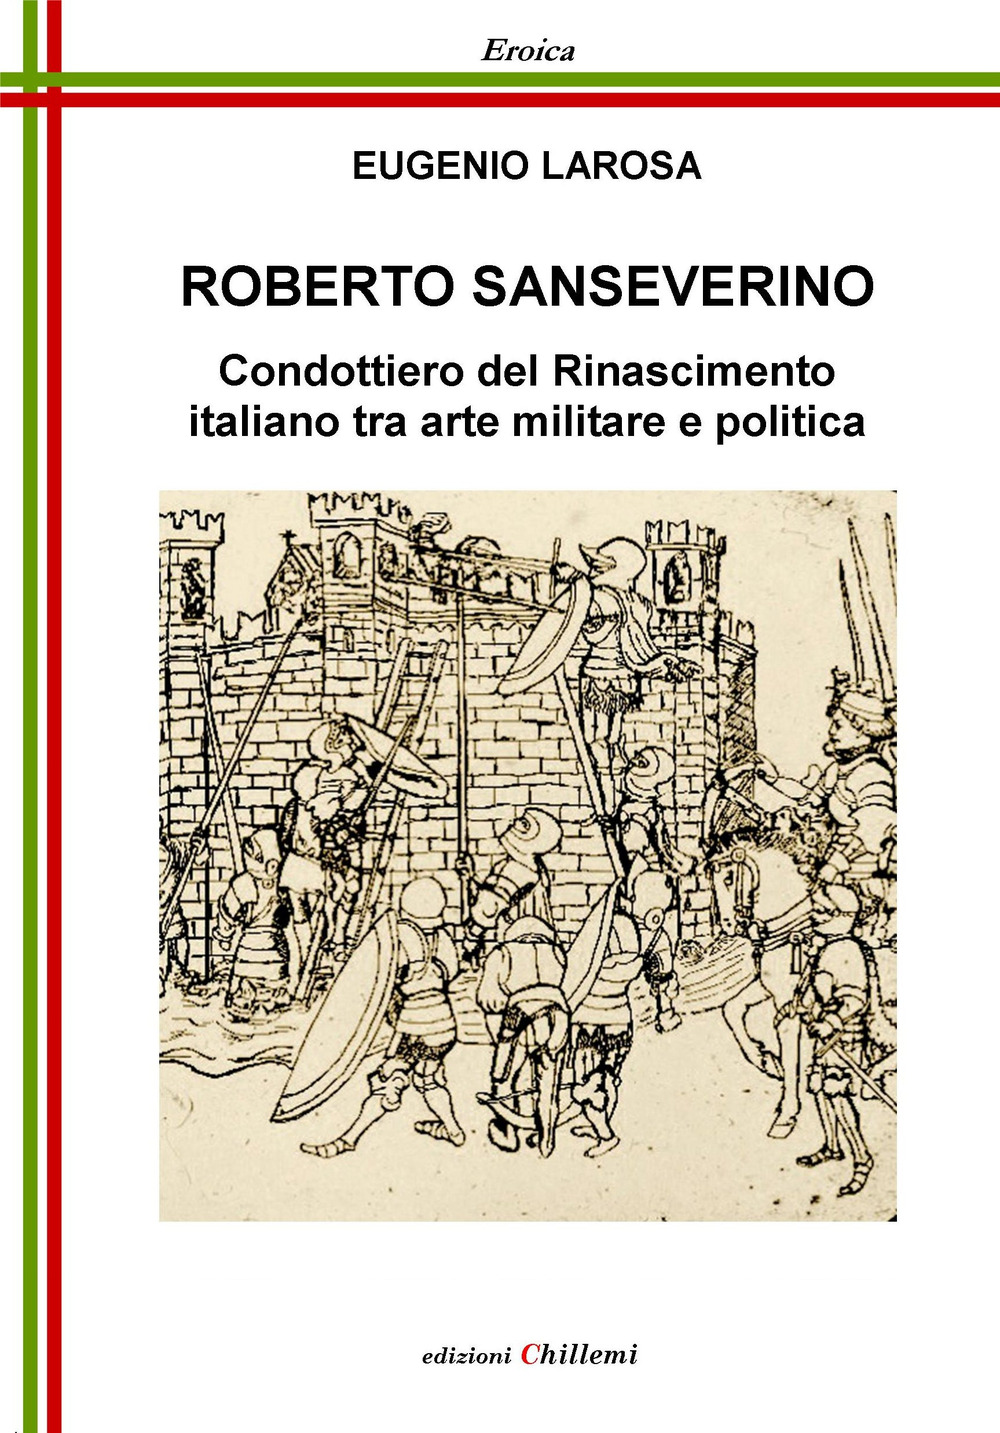 Roberto Sanseverino. Condottiero del Rinascimento italiano tra arte militare e politica